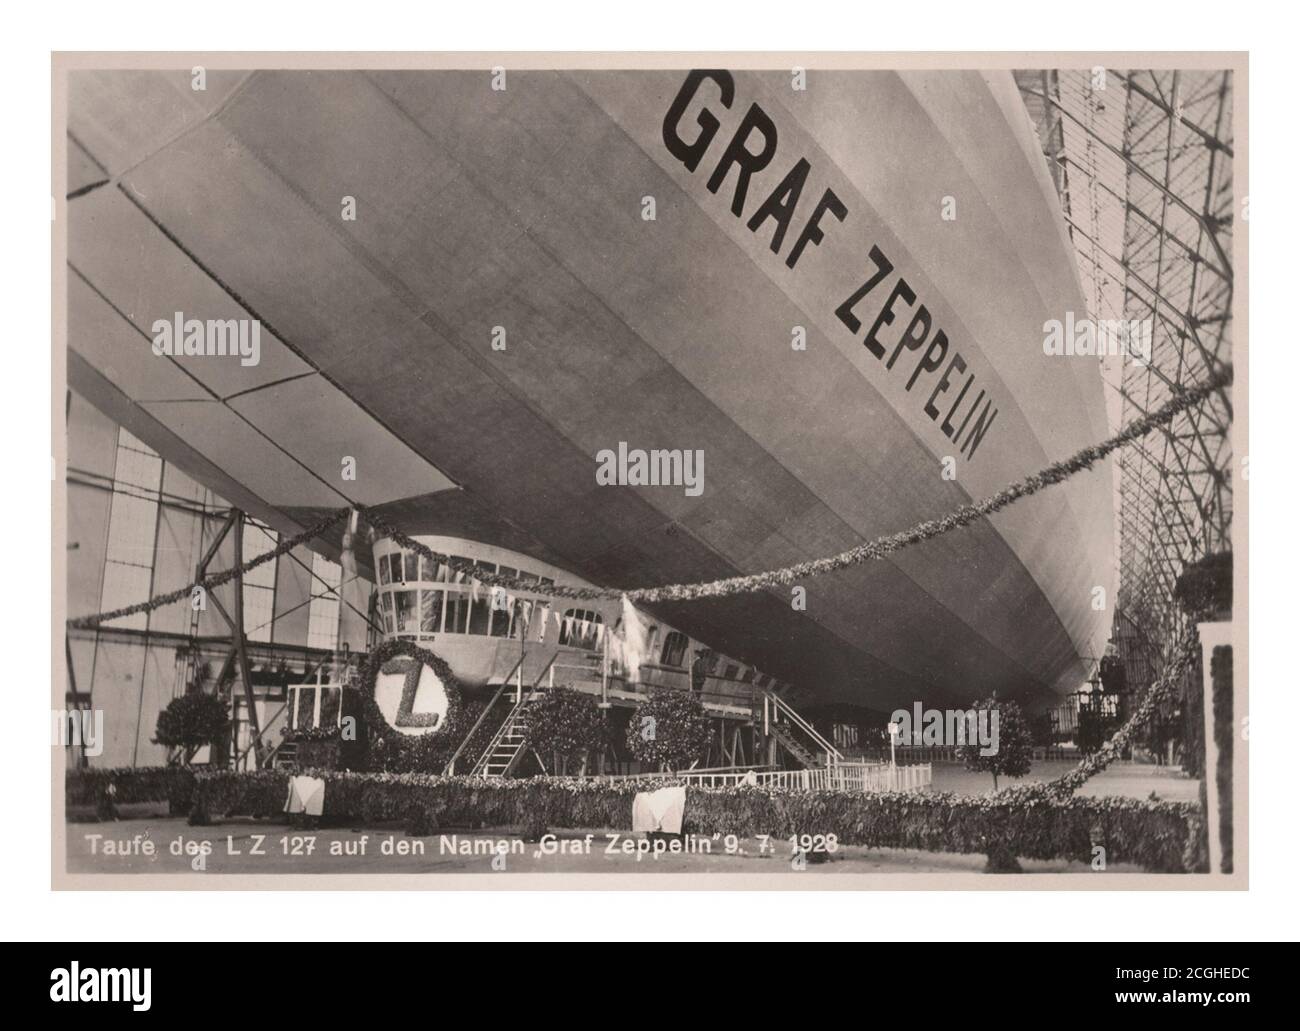 Archivo Zeppelin ceremonia de lanzamiento en Friedrichshafen, Alemania, para Zeppelin LZ127 'Graf Zeppelin' 9.7.1928 Foto de stock